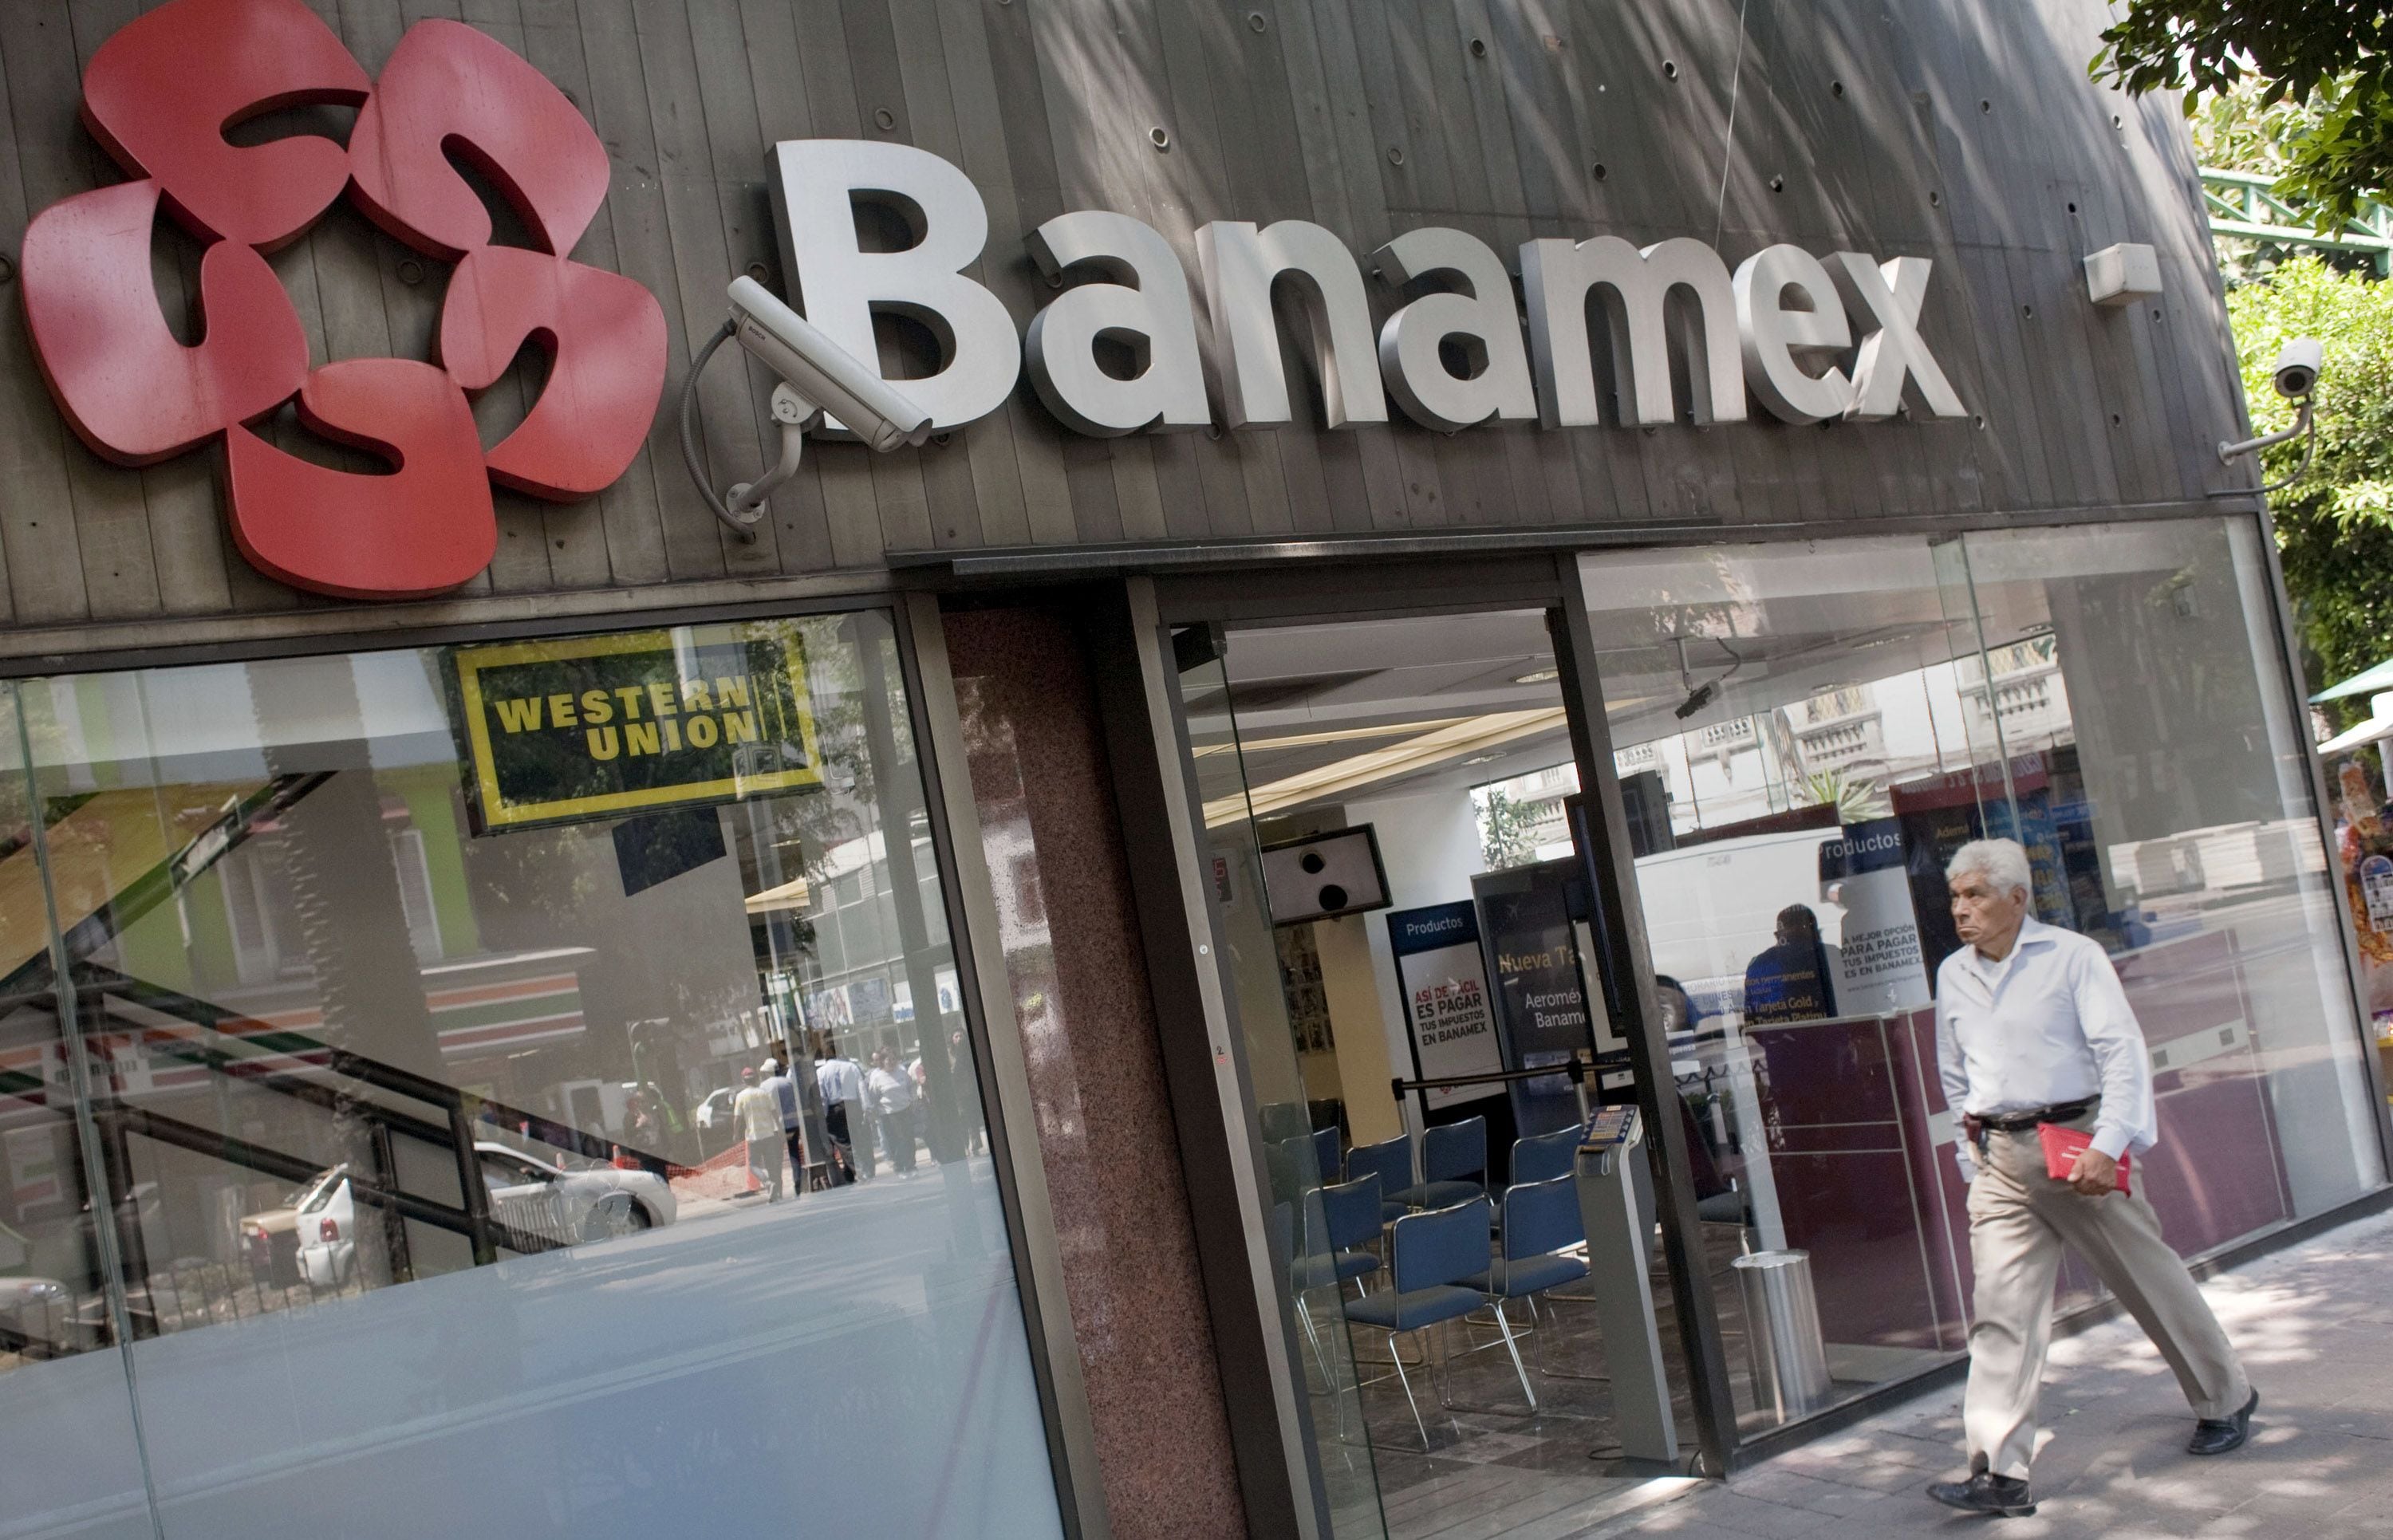 Citibanamex: AMLO quer empresários mexicanos, mas os EUA também